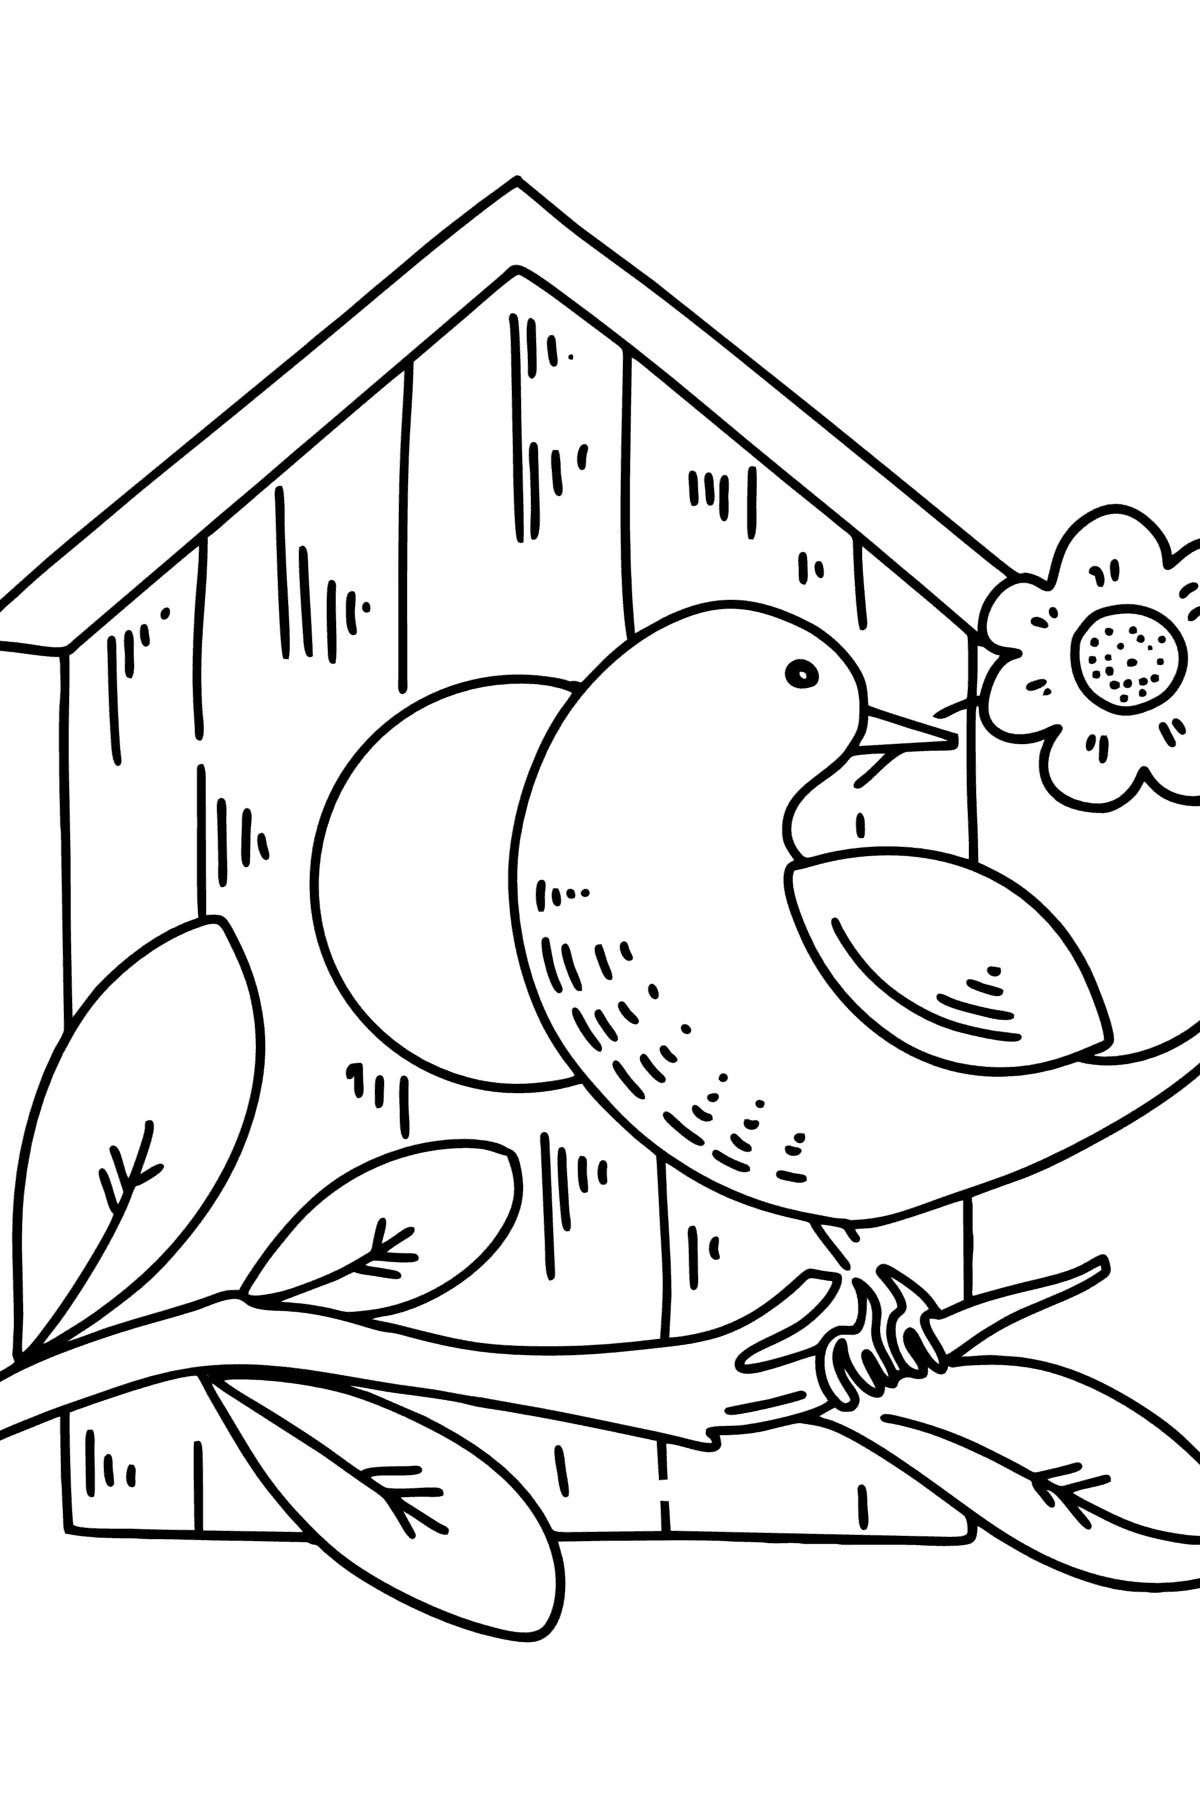 Tegning til fargelegging stær ved fuglehuset - Tegninger til fargelegging for barn